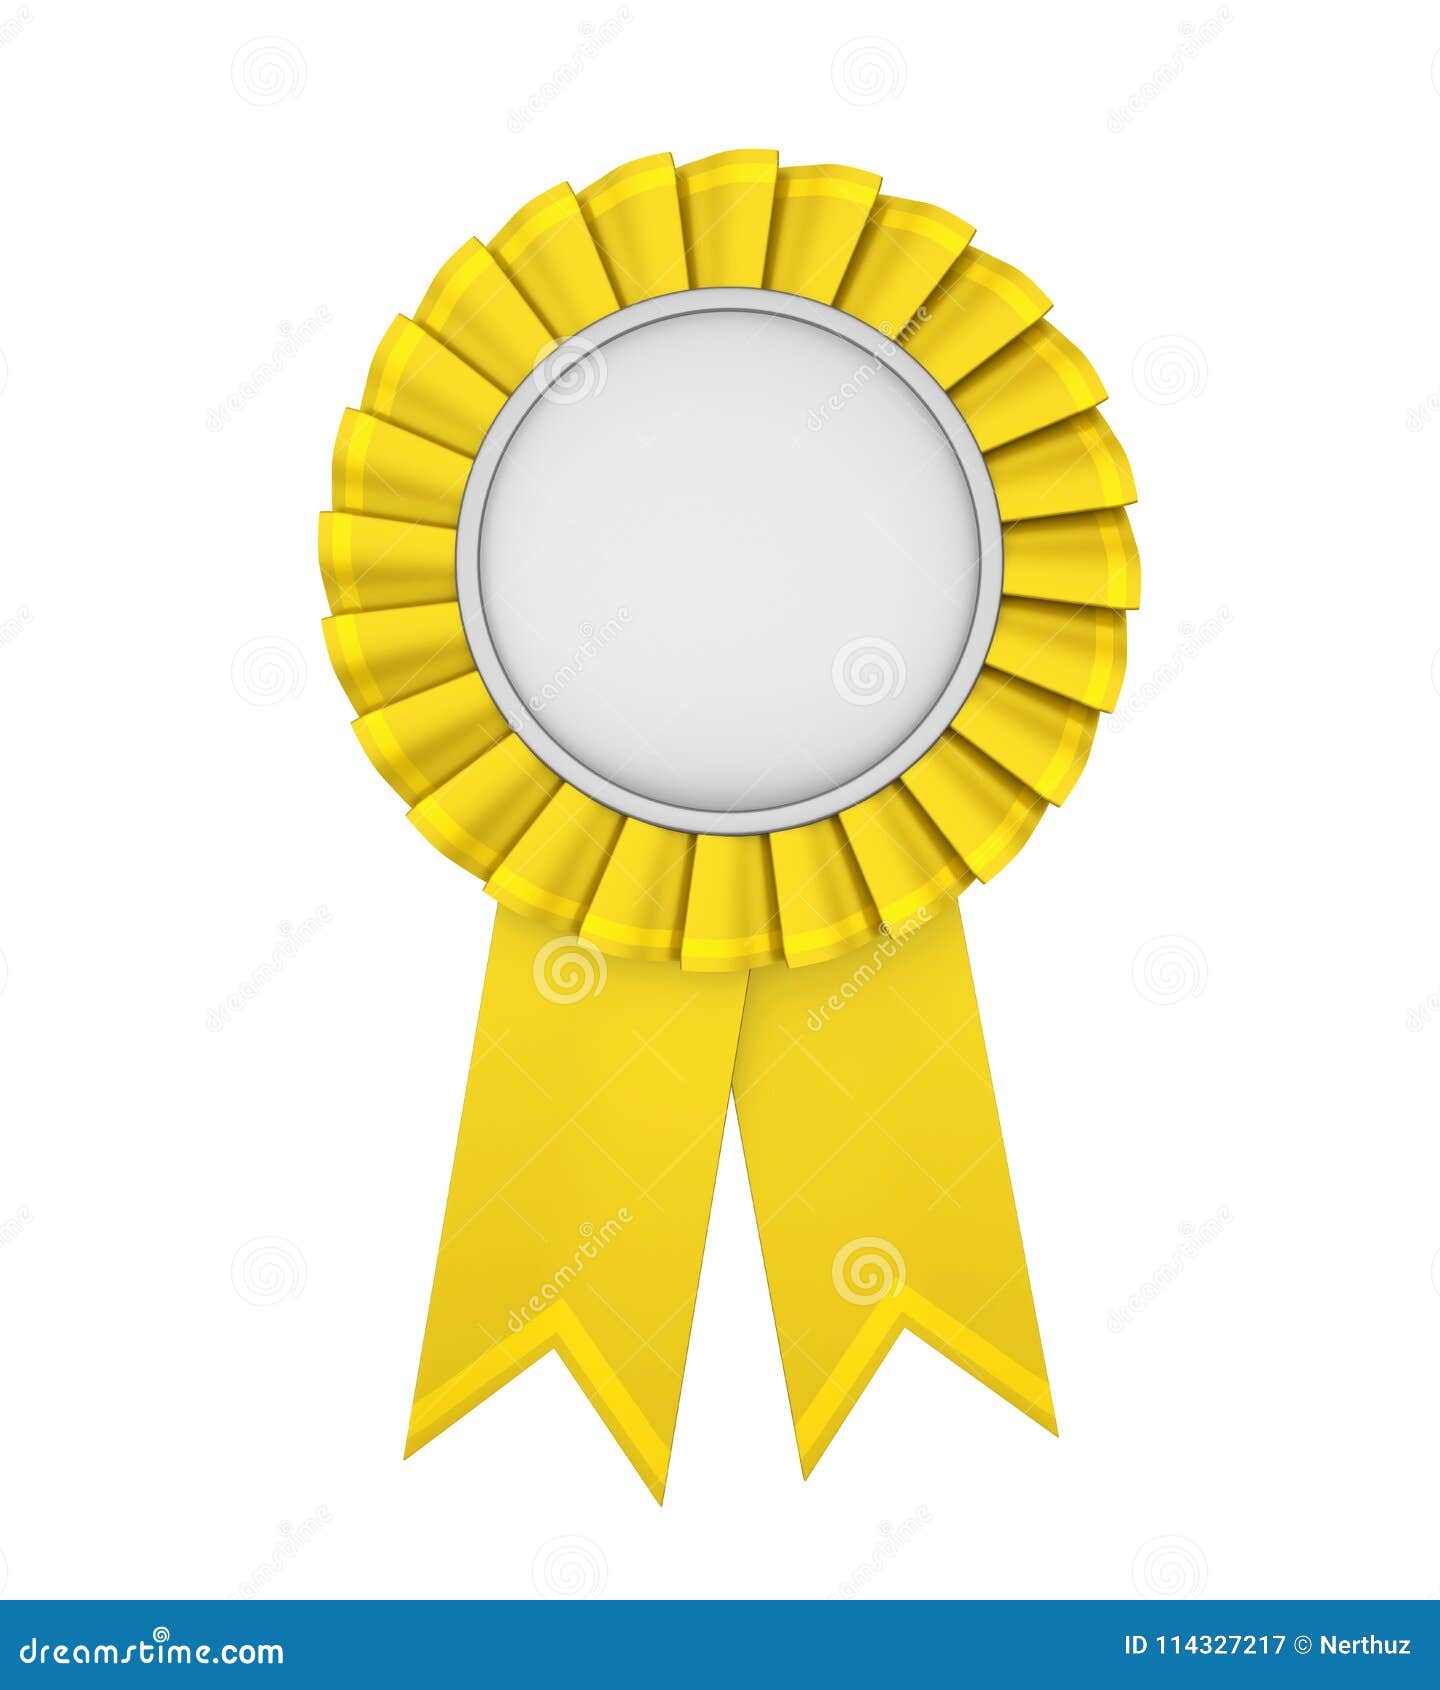 Award yellow ribbon Royalty Free Vector Image - VectorStock